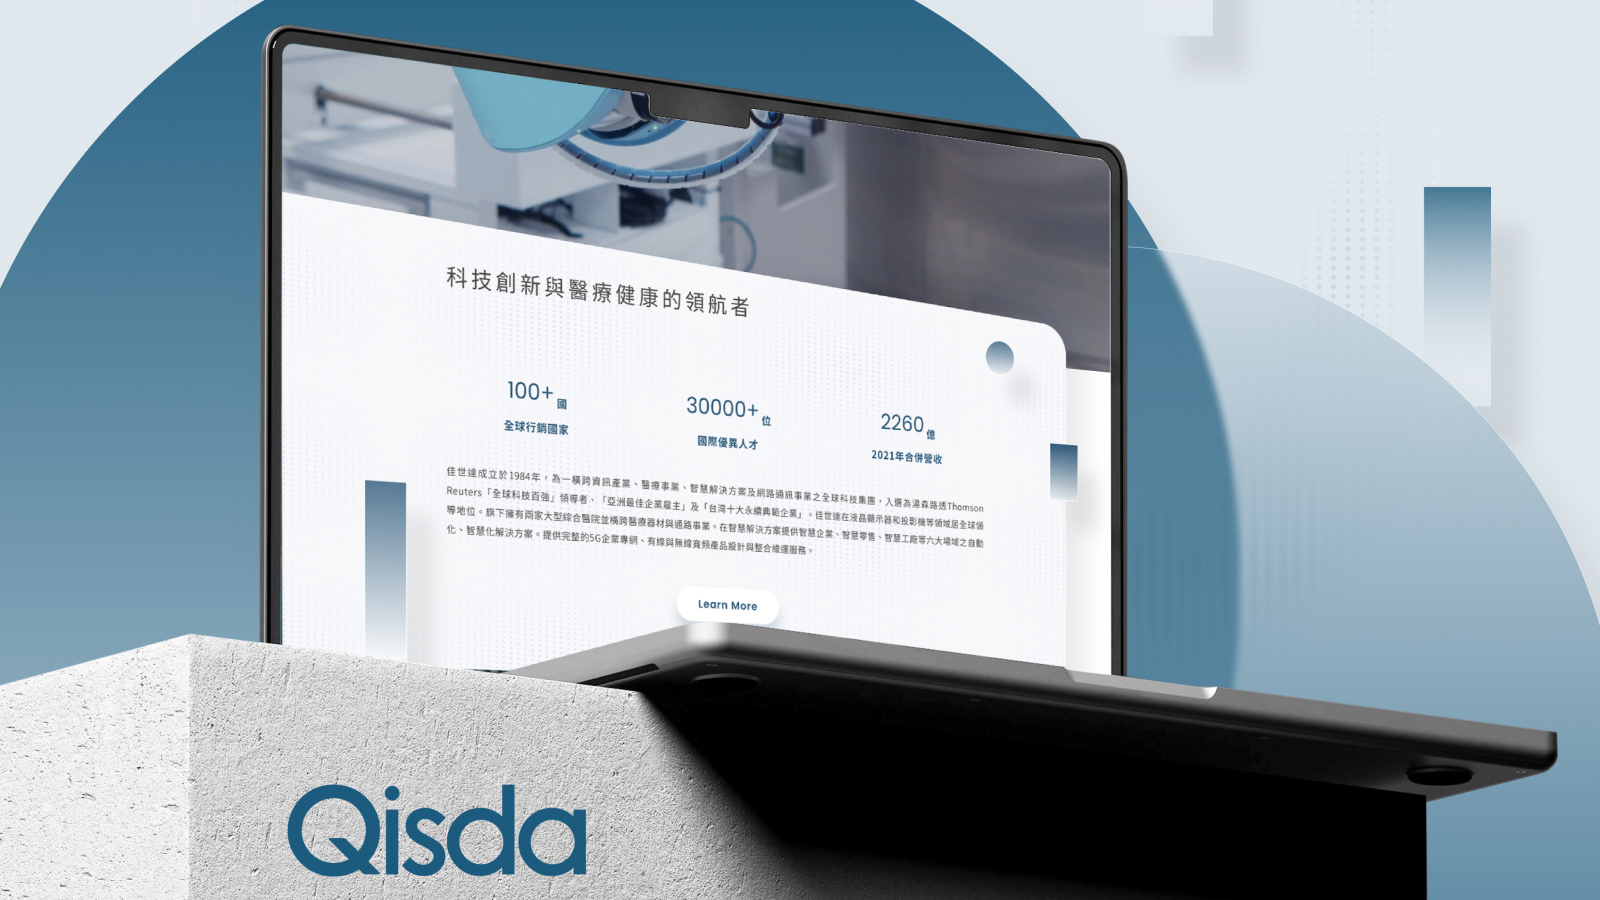 Qisda 佳世達科技 ─ 官方網站